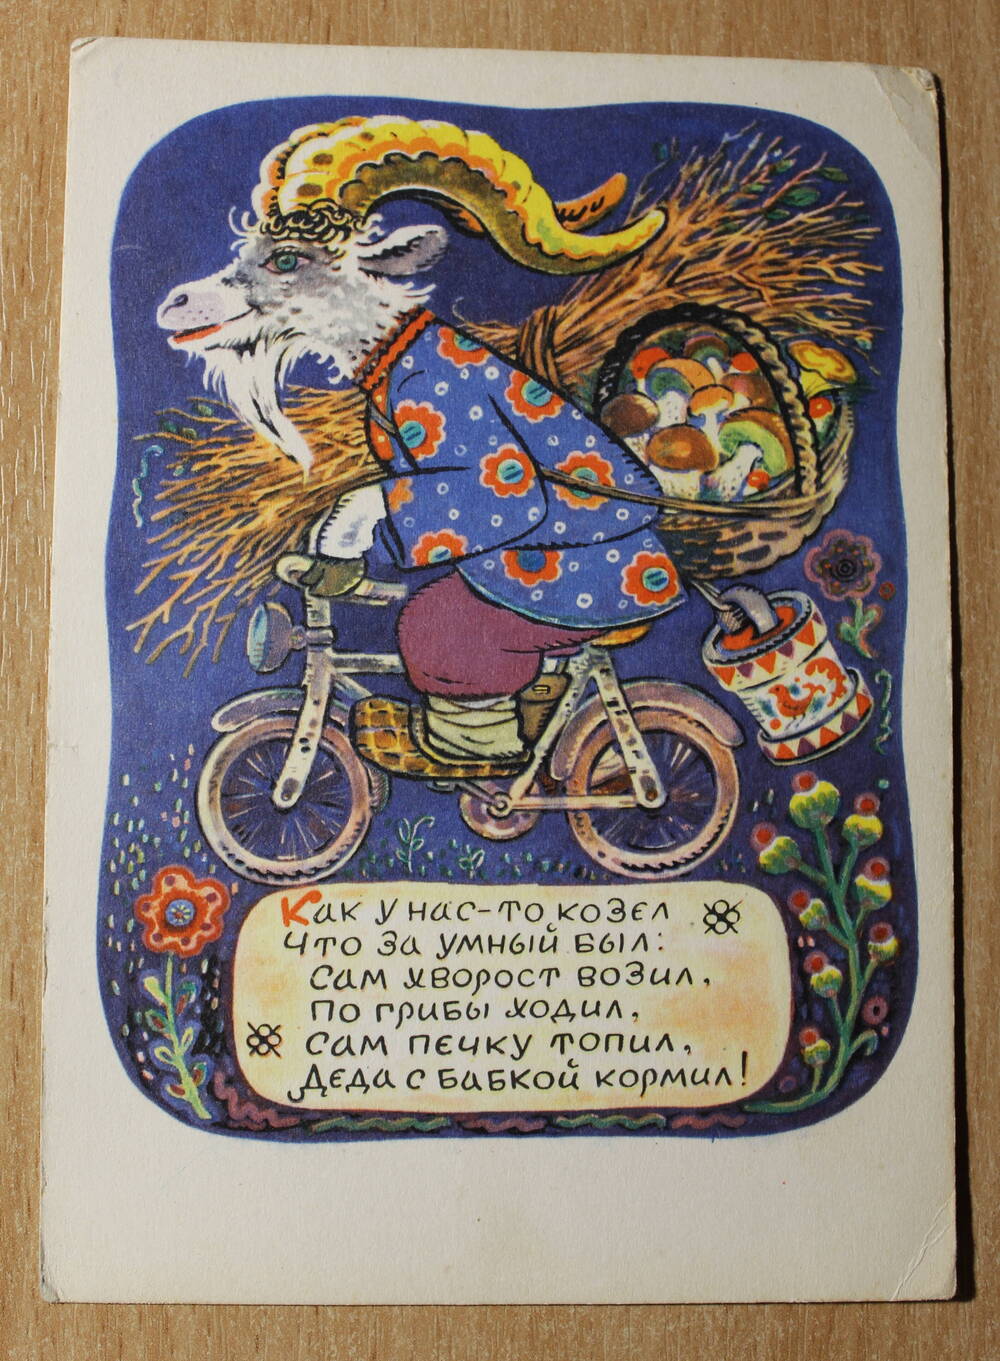 Фотография. Подборка открыток. 
Открытка сюжетная. Козел на велосипеде.